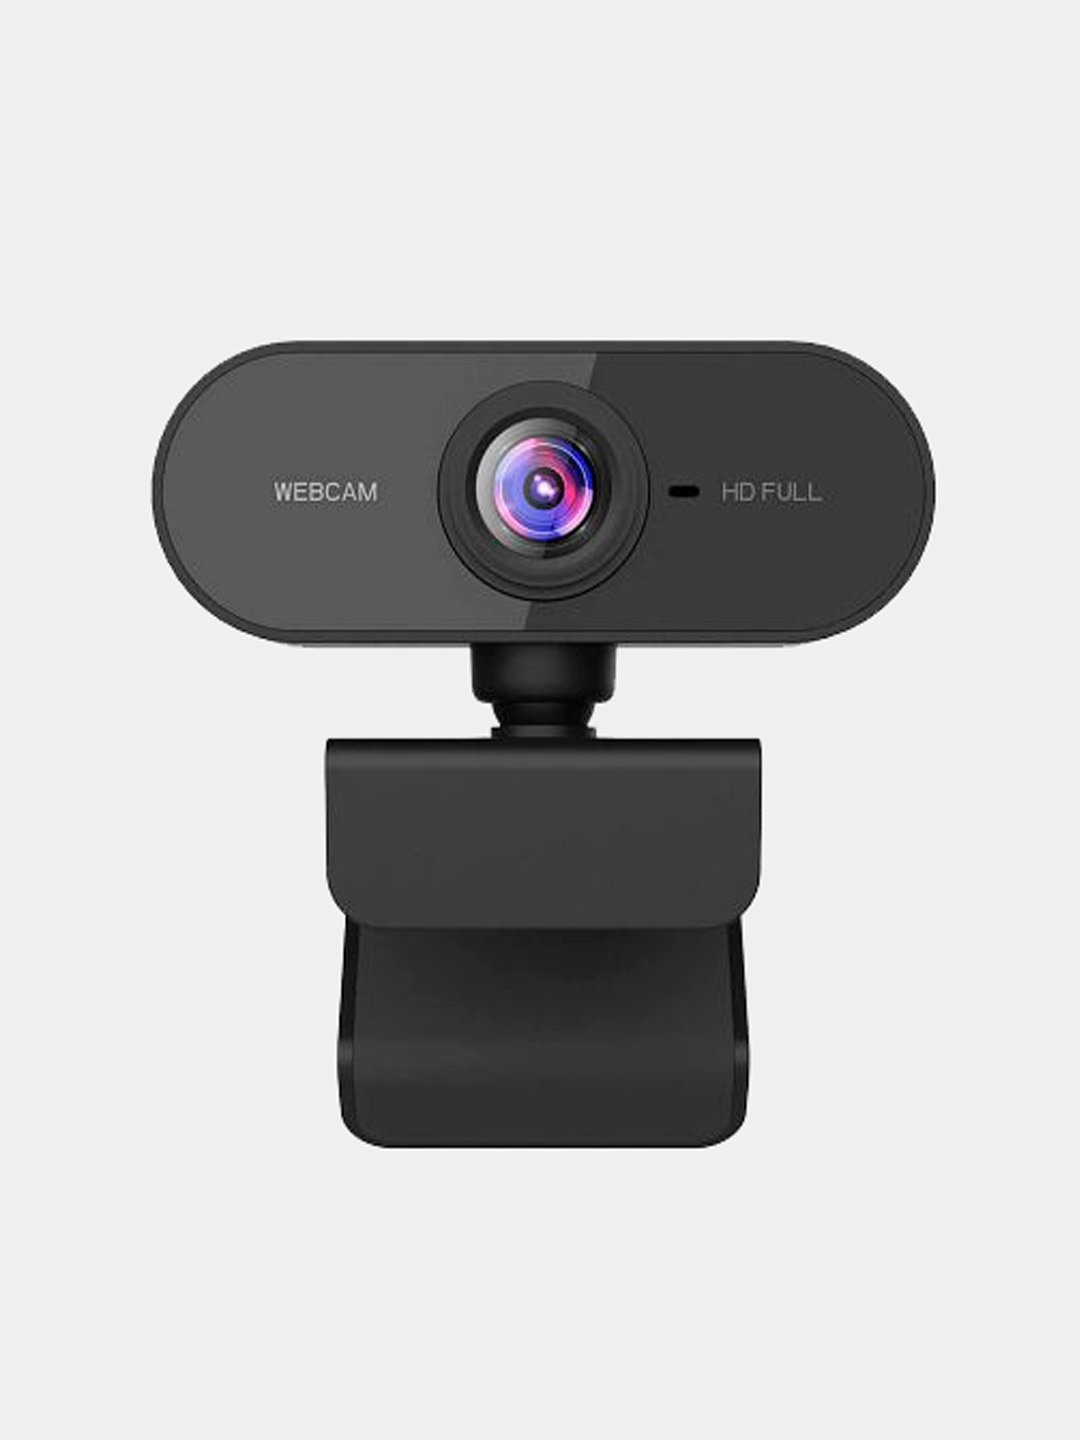 Веб-камера CleverCam WebCam B10 (Full HD, USB ) — купить в Москве по выгодной цене